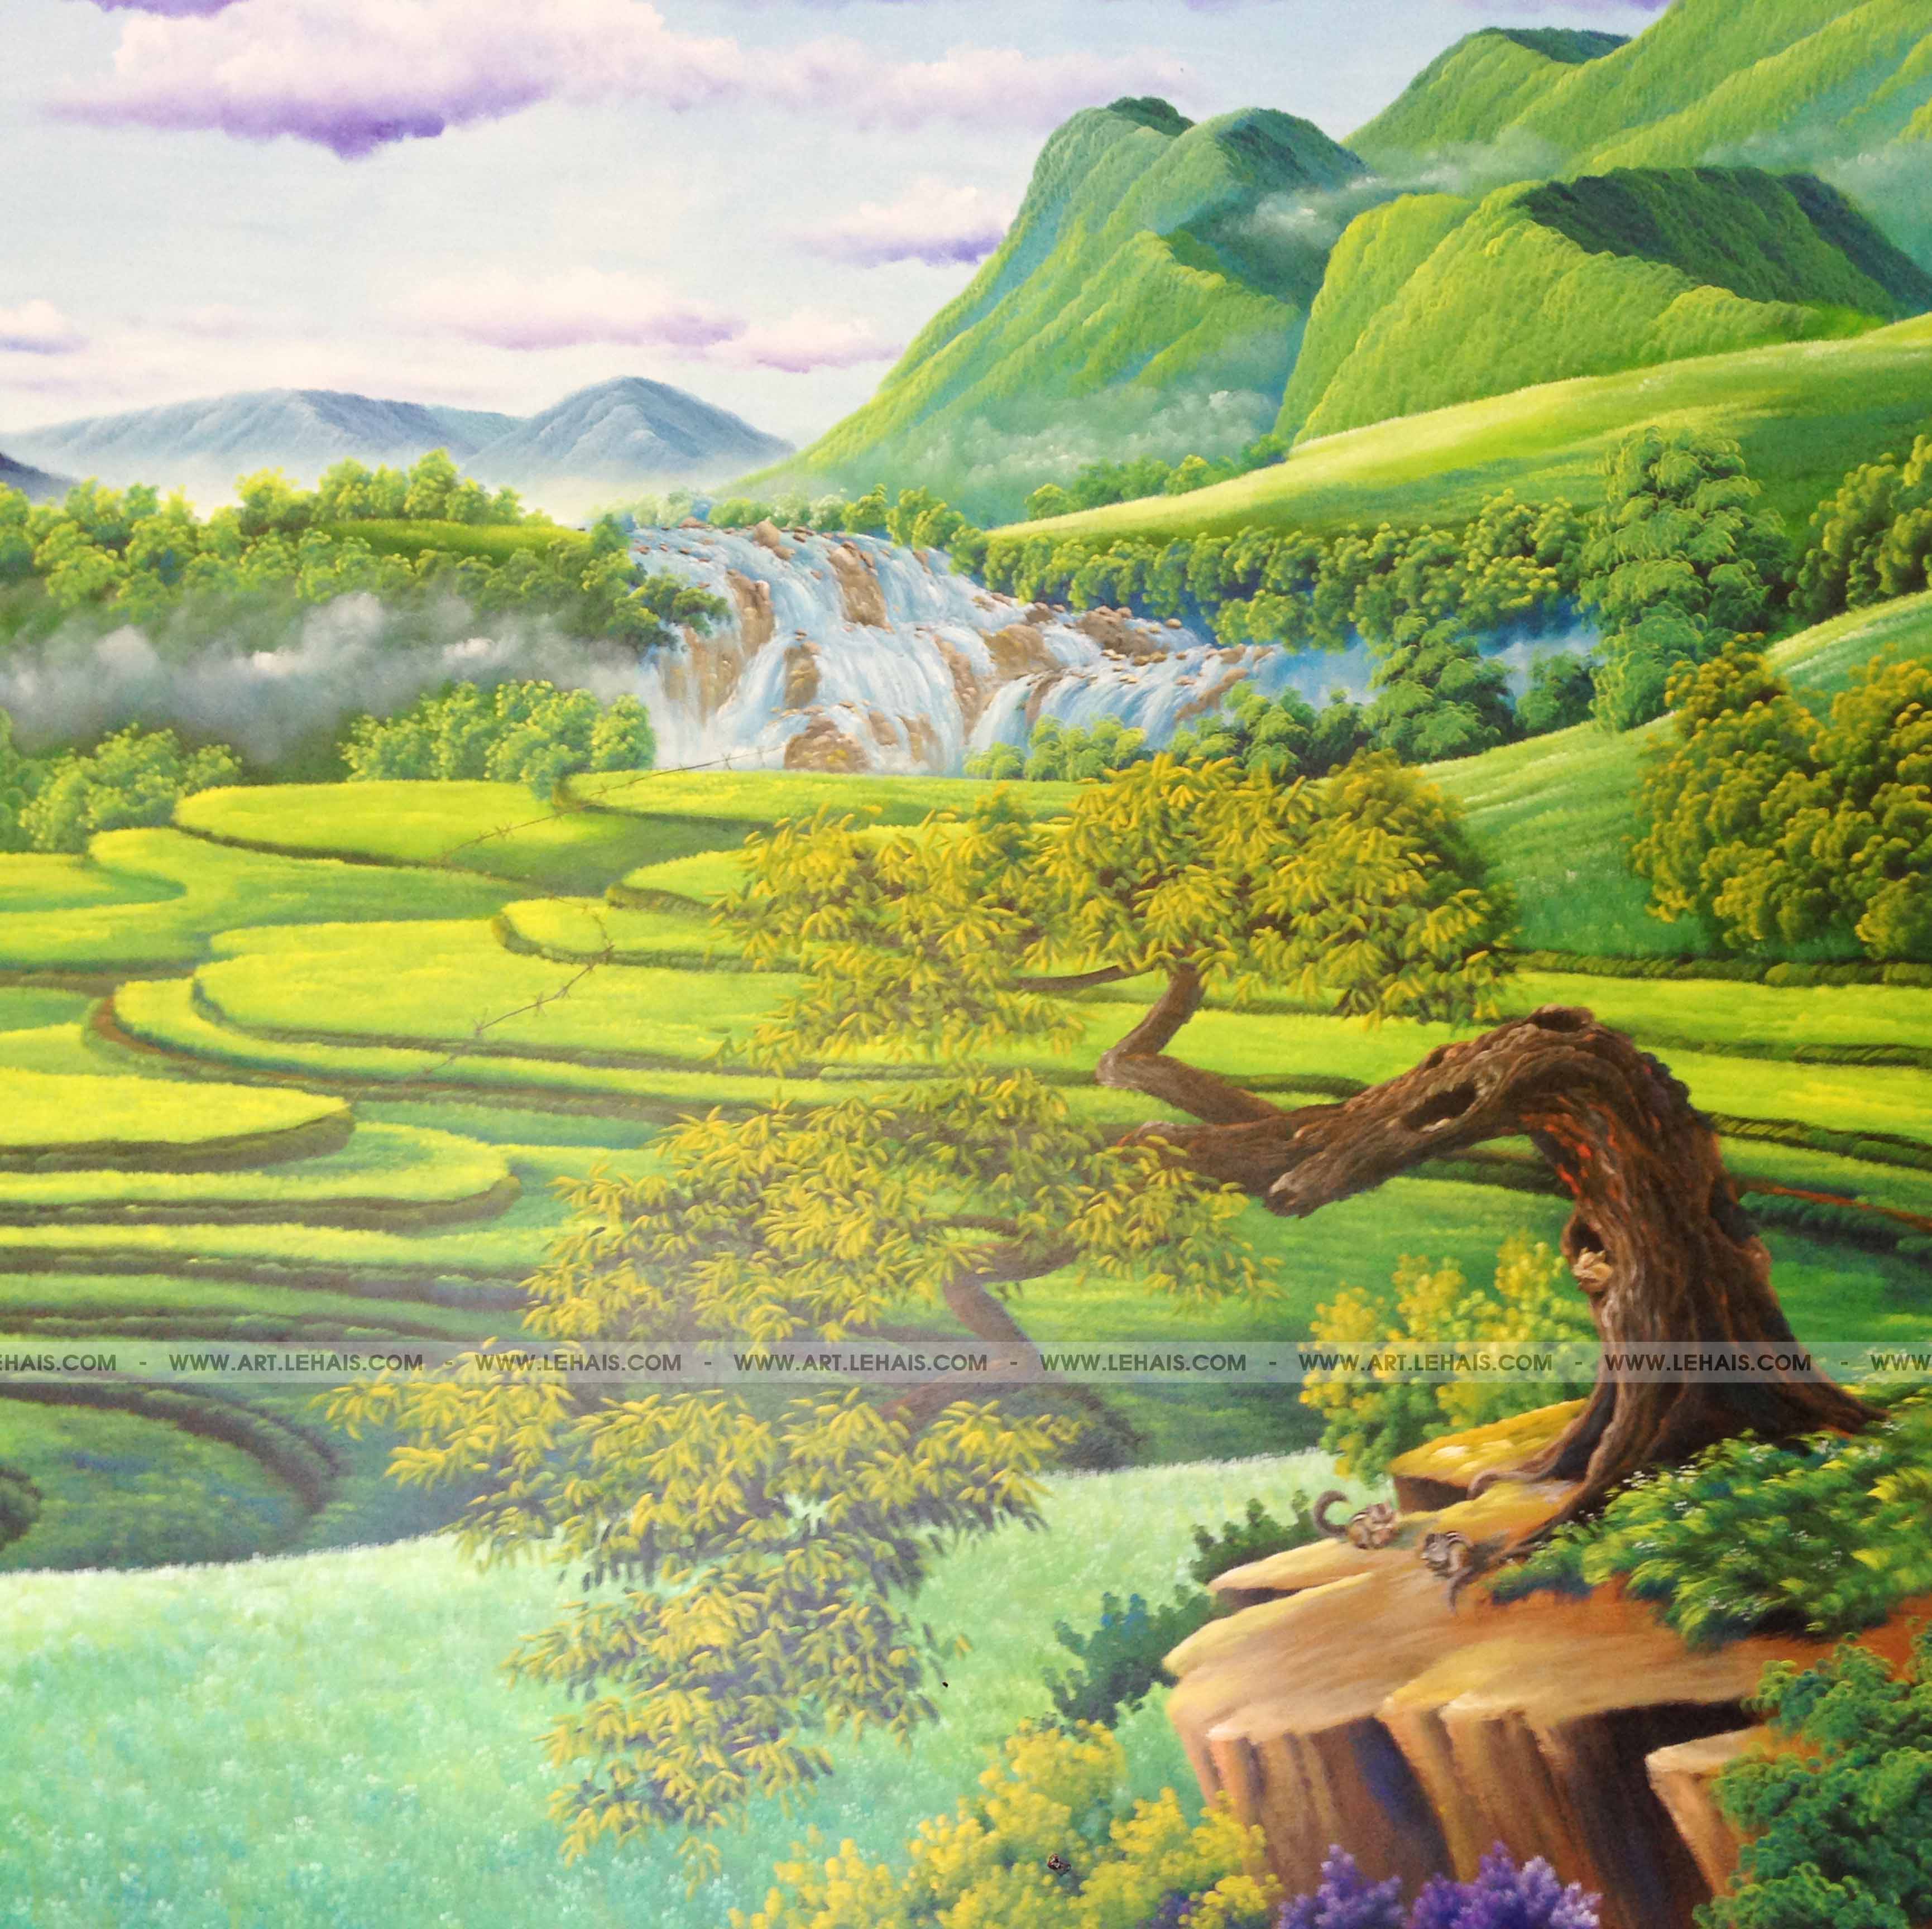 Vẽ tranh 3D cảnh núi rừng "Tây Bắc" tại gia đình ở TP Lào Cai - TT79LHAR